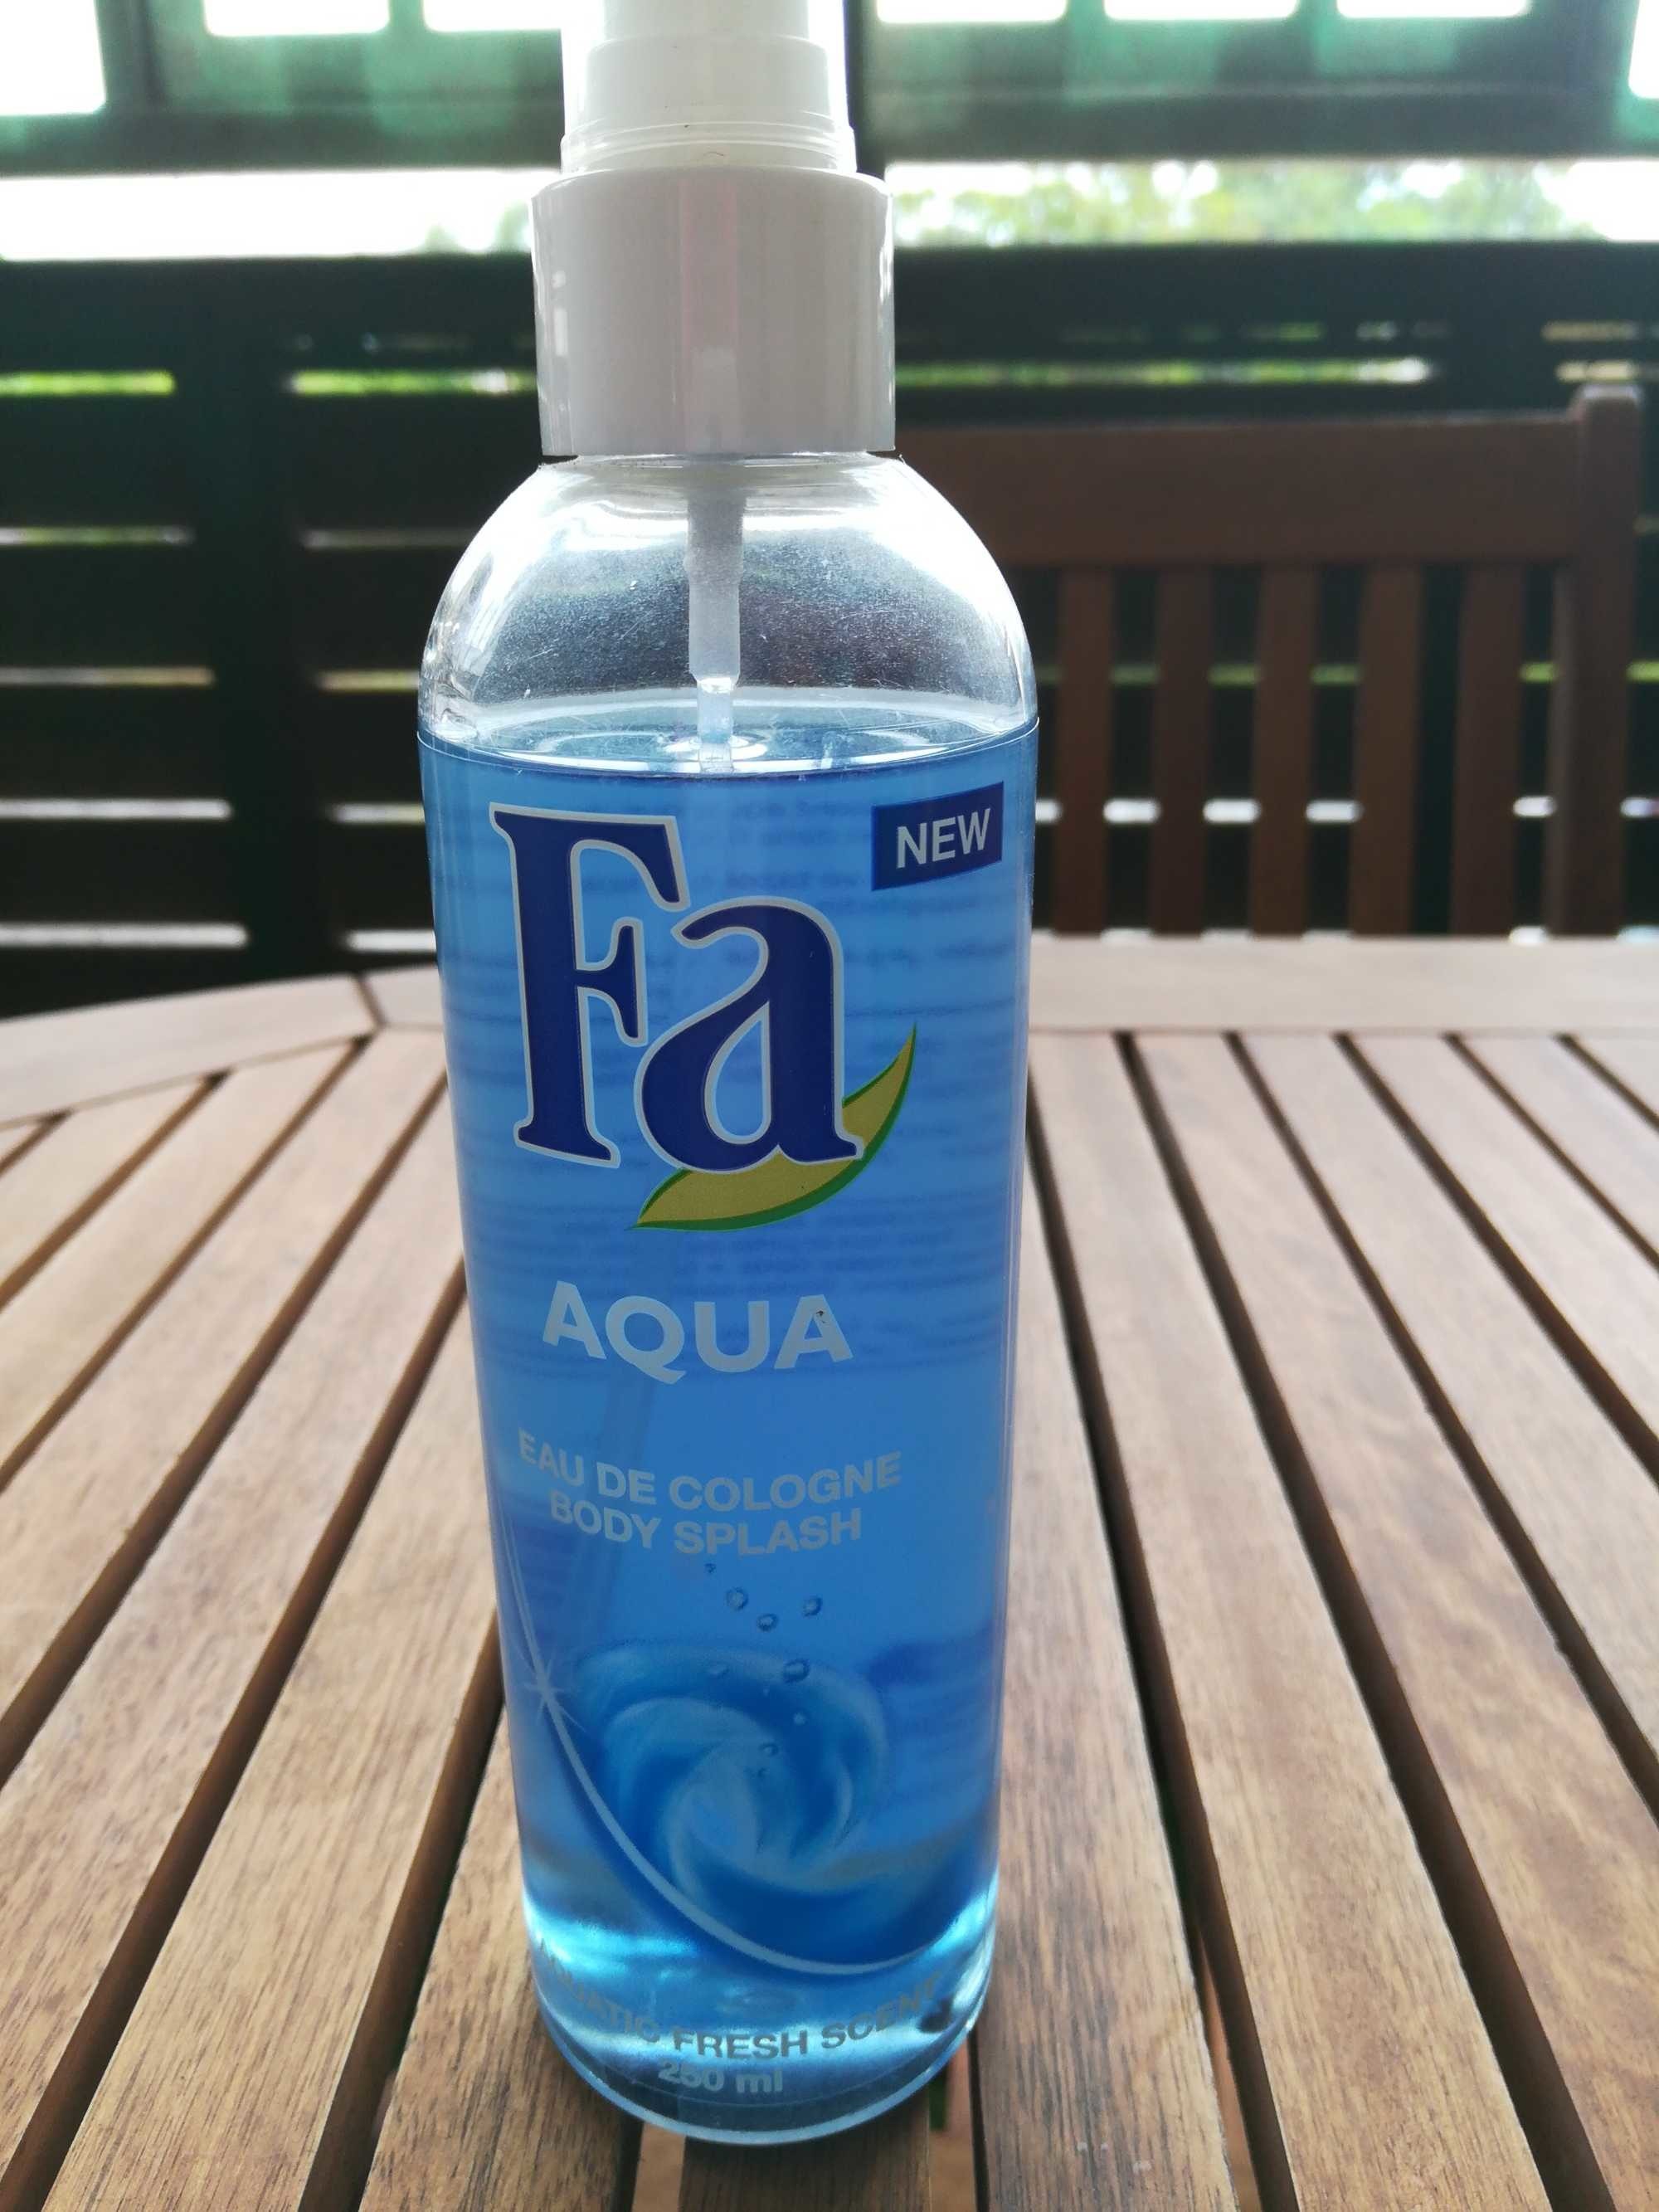 Aqua eau de cologne - Продукт - fr